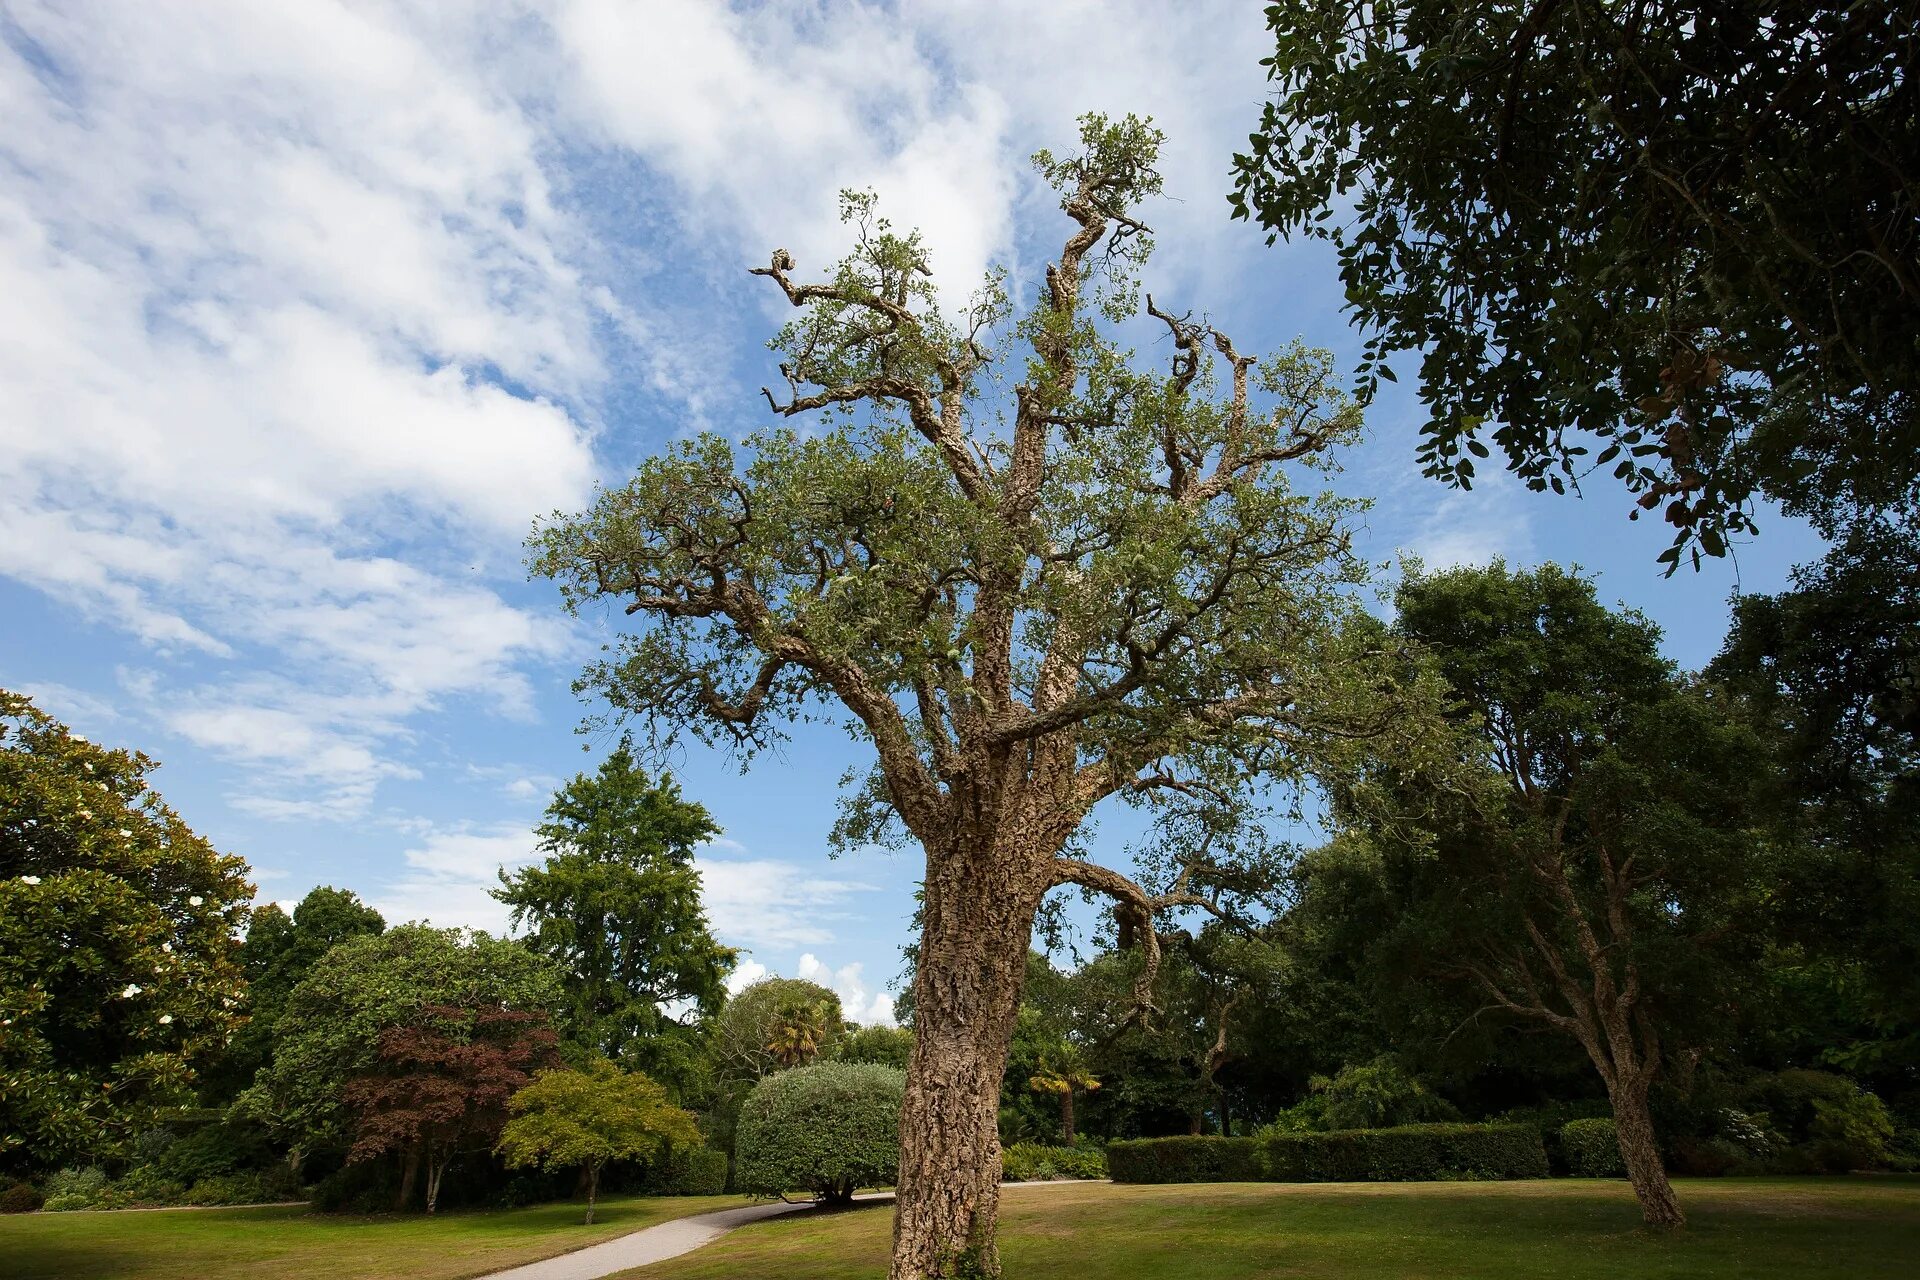 Quercus дуб пробковый. Каменный дуб Португалия. Пробковый дуб в Португалии. Вечнозеленый дуб Испании. Natural oak